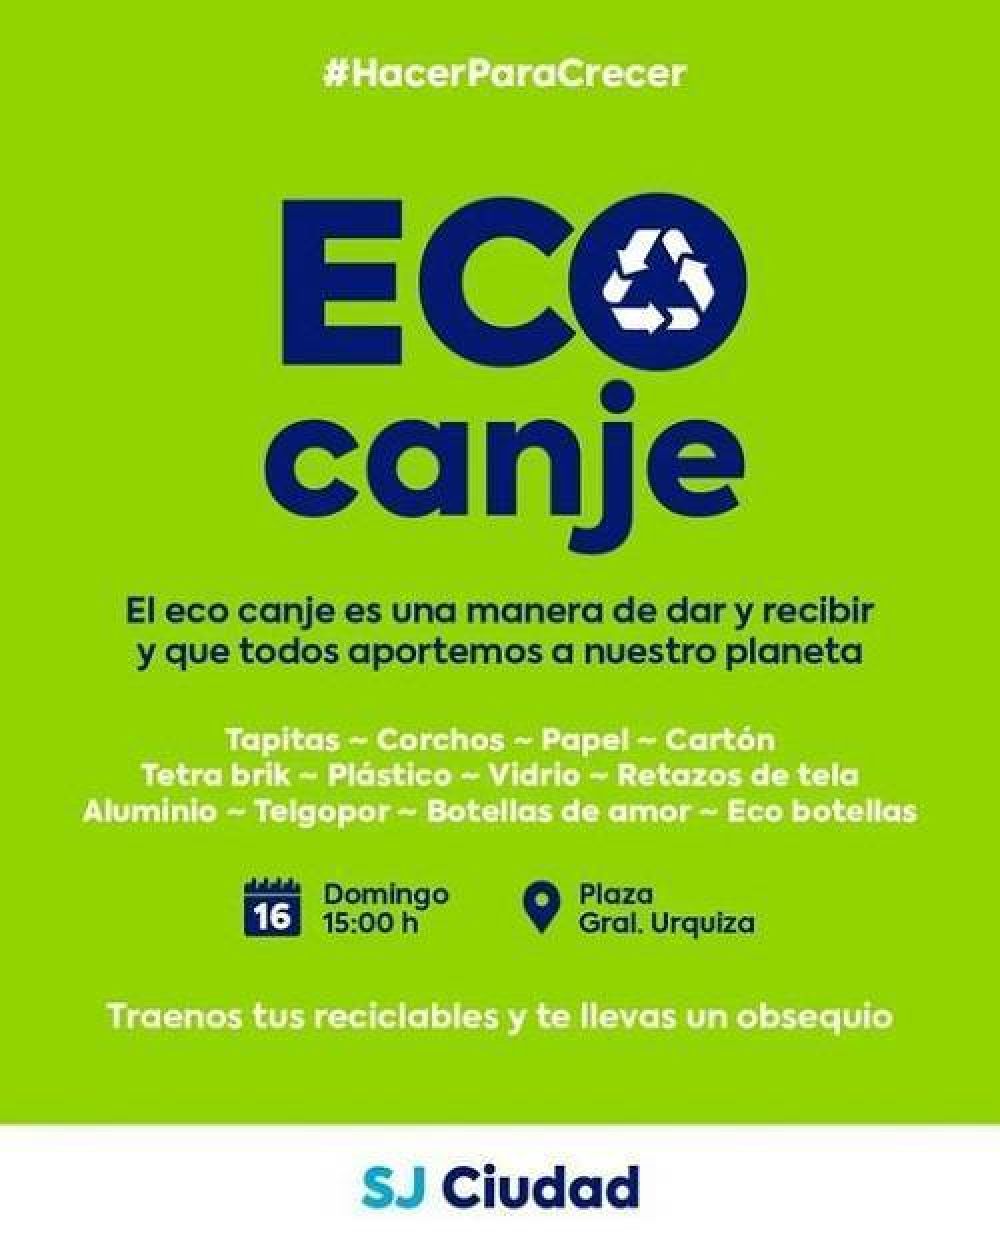 Ecocanje en San Jos: Se recibirn materiales reciclables y aceite vegetal usado